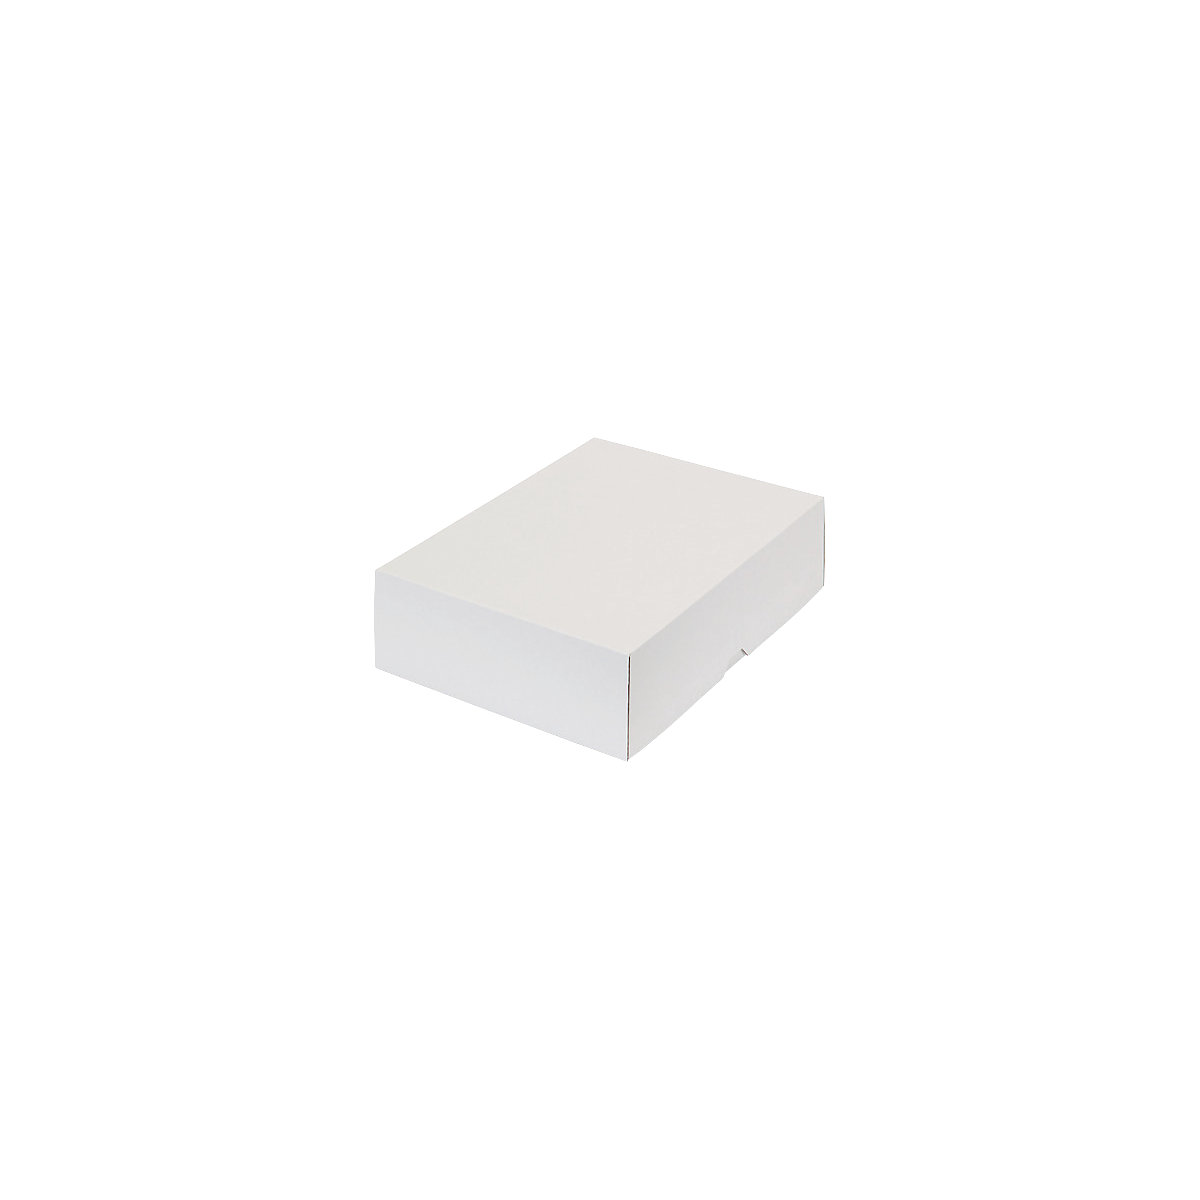 Stülpdeckelkarton, zweiteilig, Innenmaße 302 x 213 x 80 mm, A4, weiß, ab 200 Stk-41